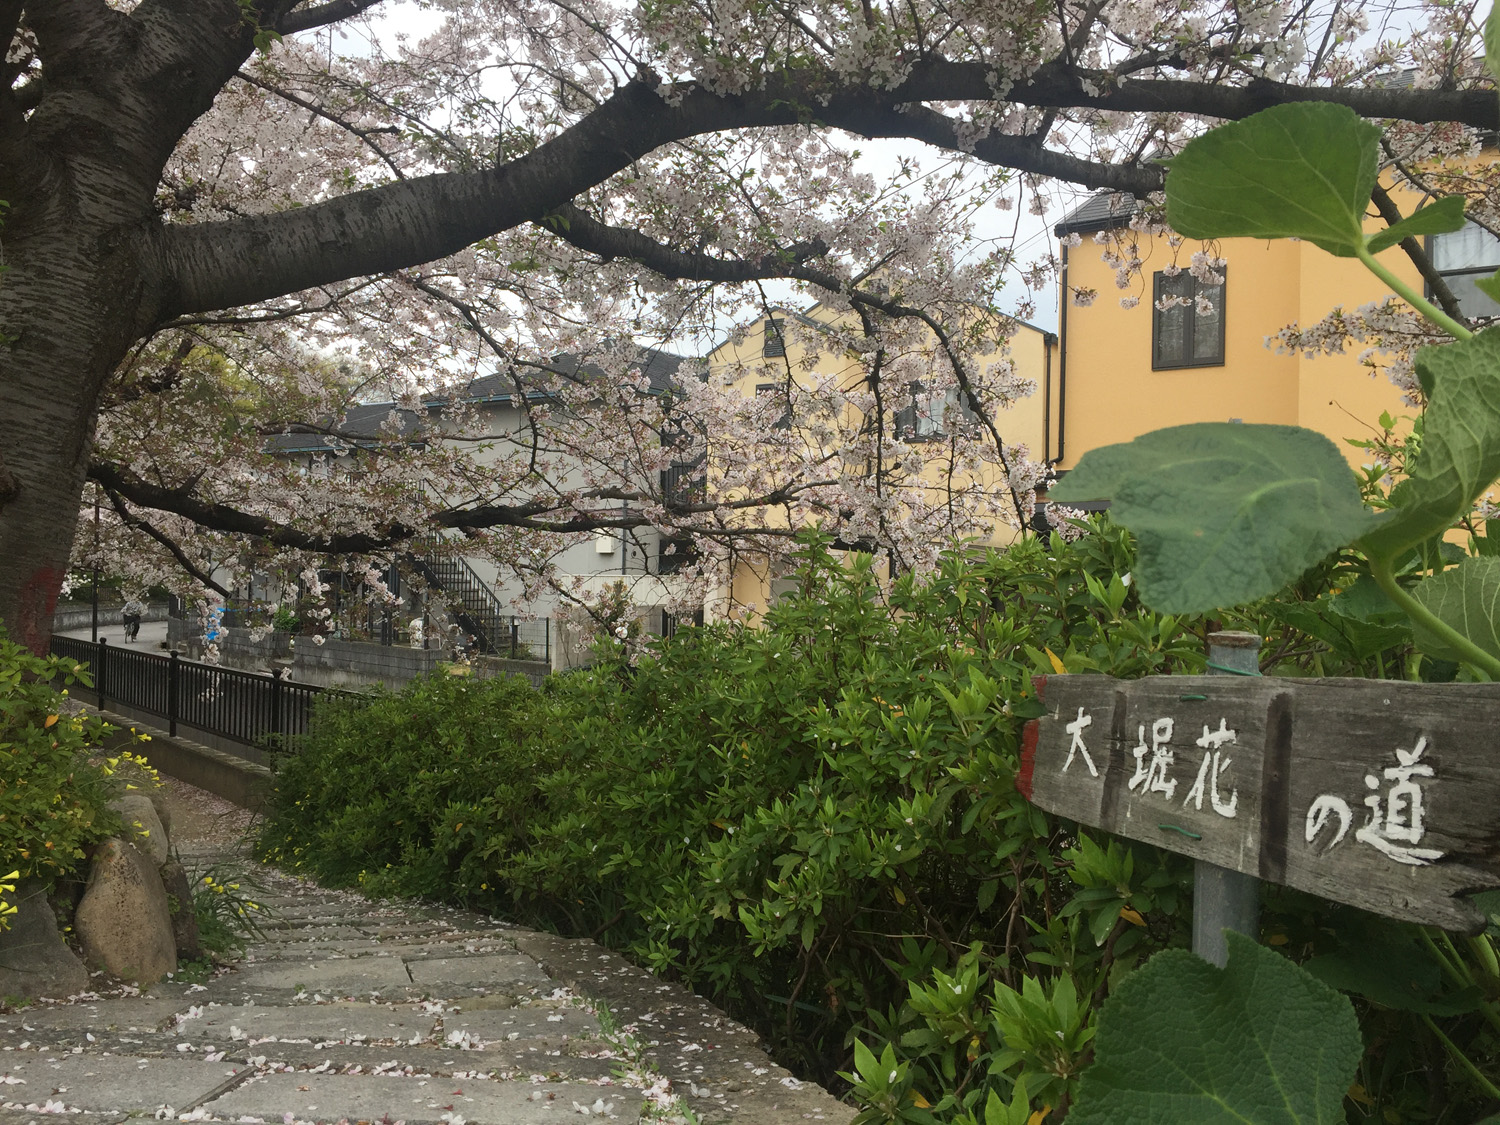 宝塚市 川を流れる花びらも綺麗 大堀川の花の道公園は桜のきれいな花見スポット 号外net 宝塚市 川西市